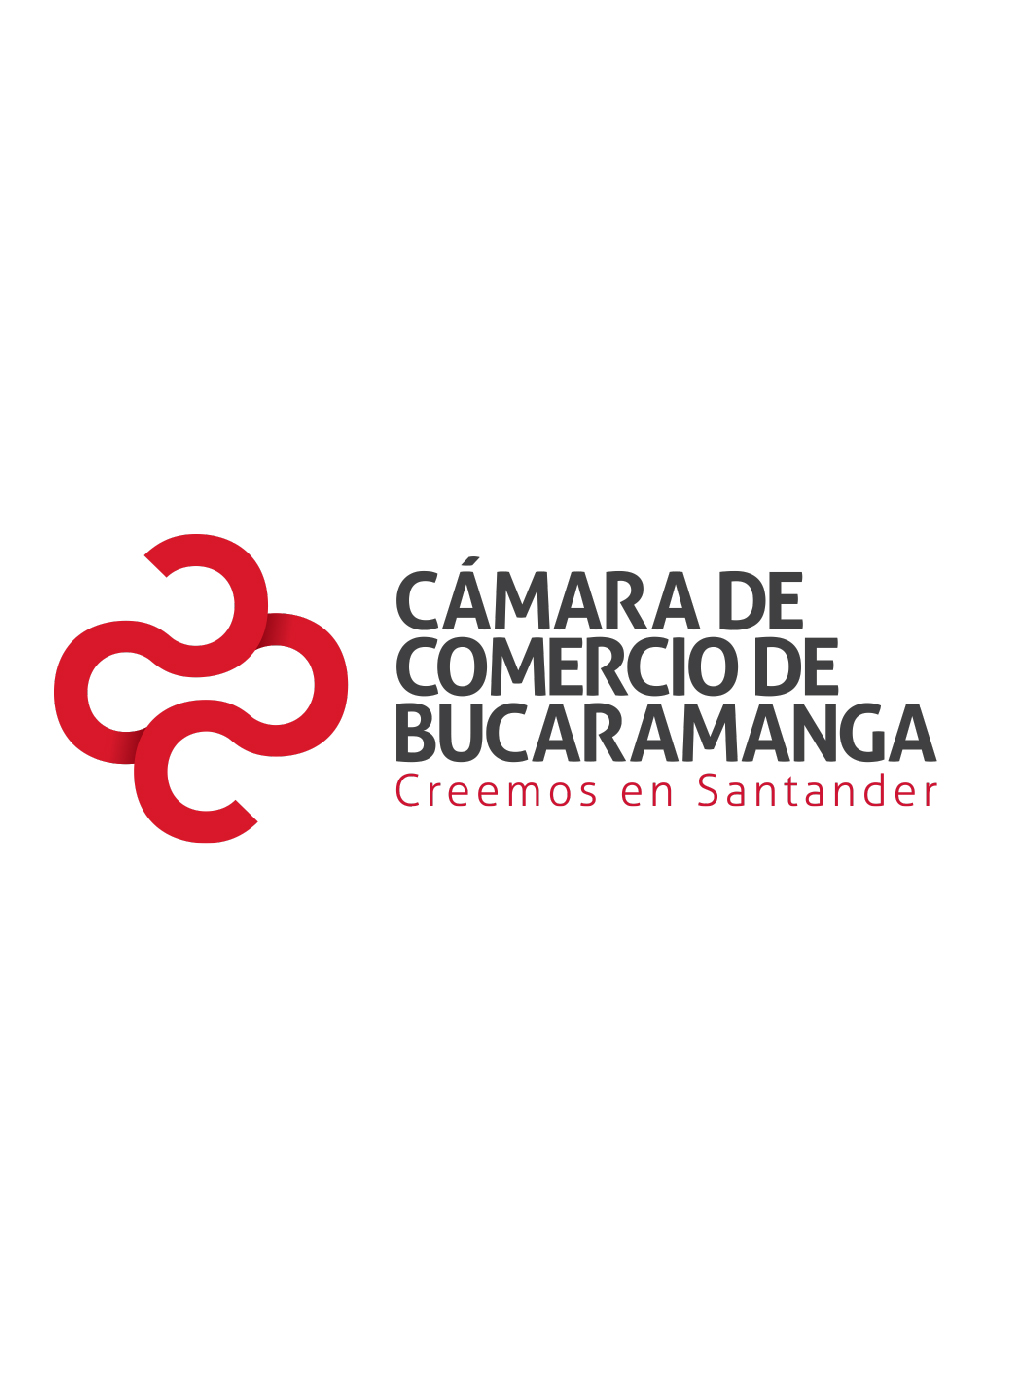 Nuevas empresas constituidas Santander 2019 - III trimestre